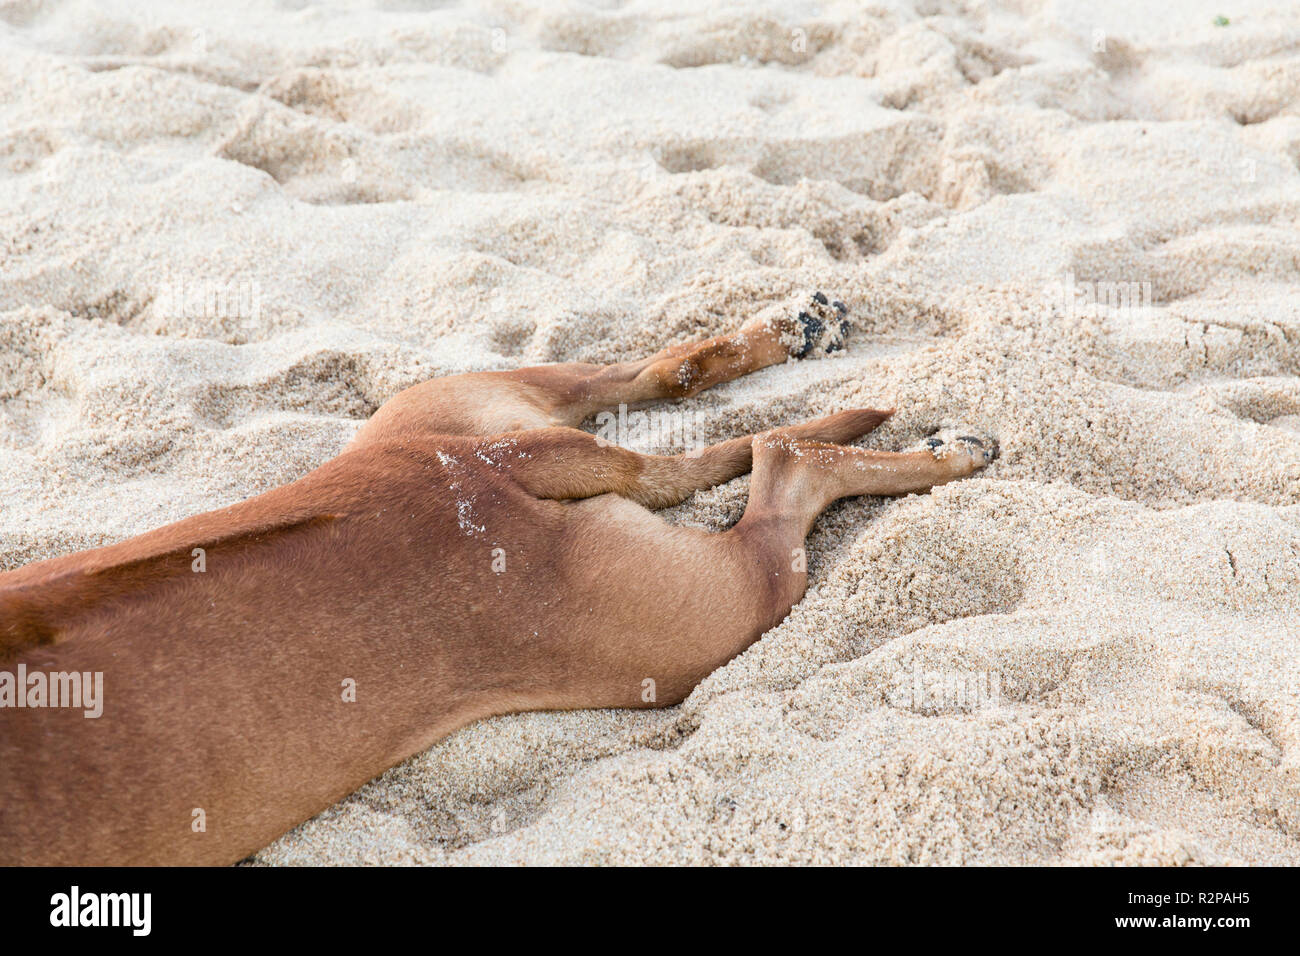 Chien couché dans le sable, tendus, vue partielle, photo humoristique Banque D'Images